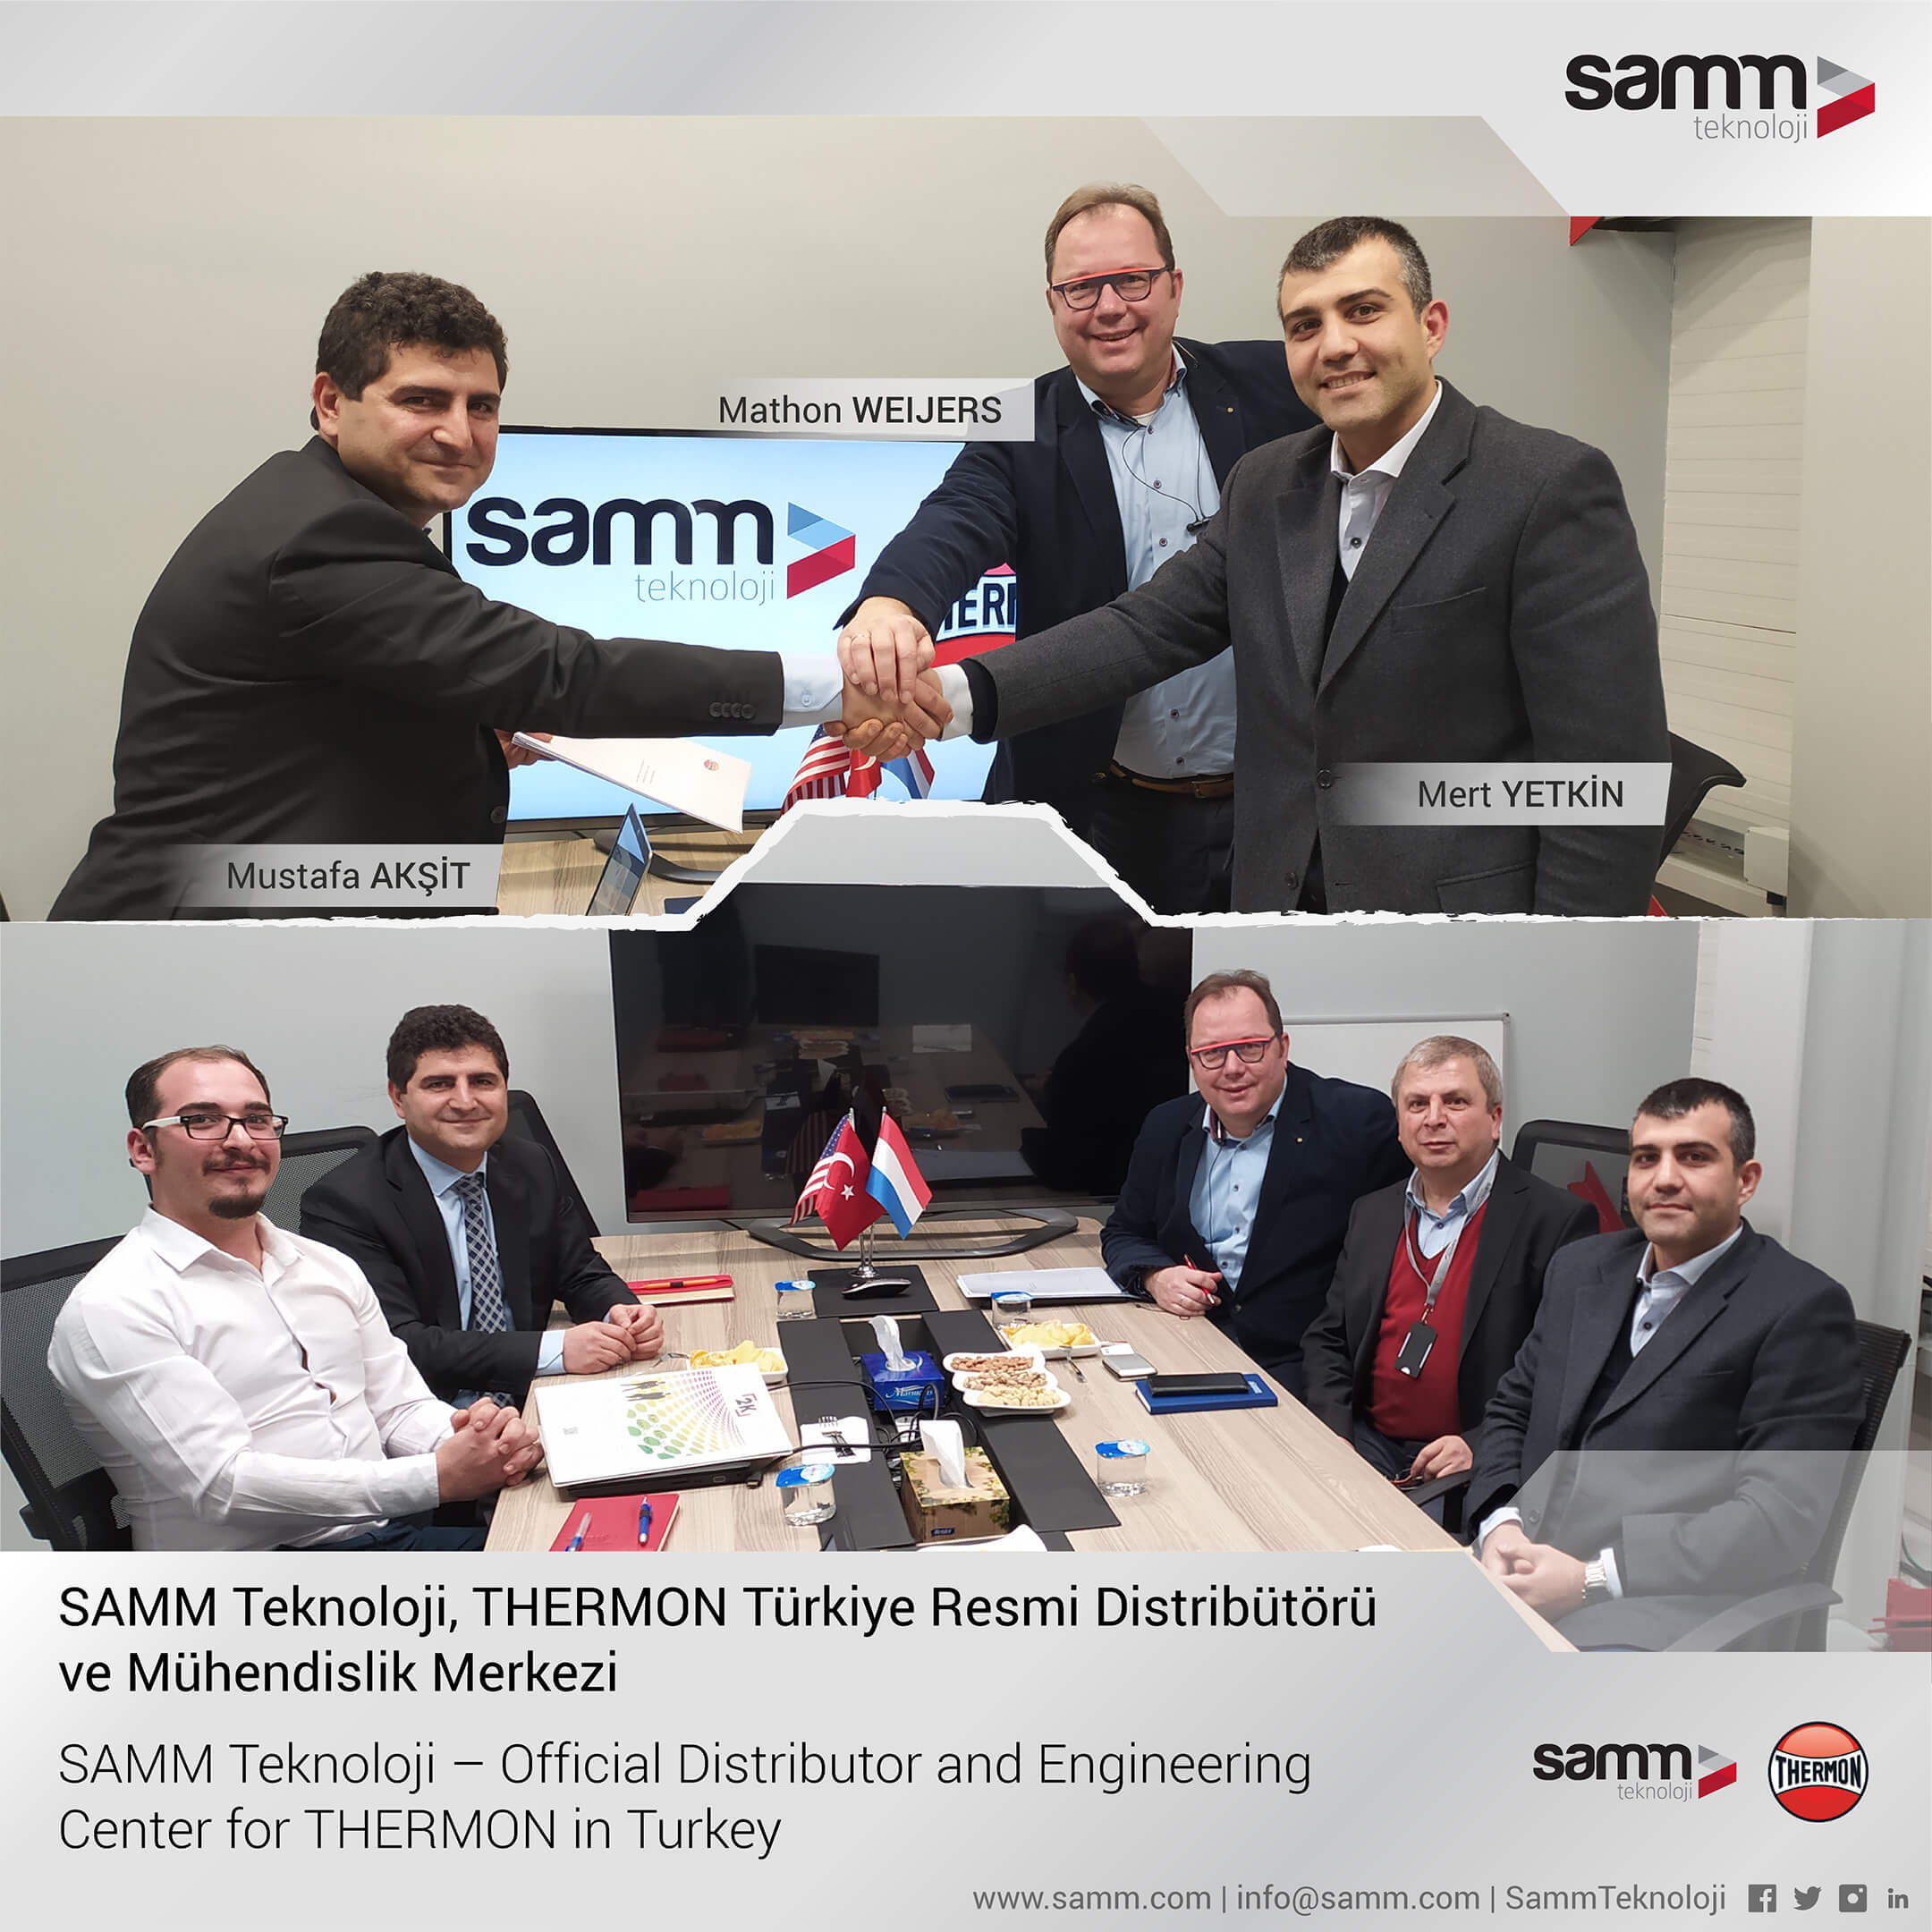 SAMM Teknoloji, Thermon Türkiye Resmi Distribütörü ve Mühendislik Merkezi 1